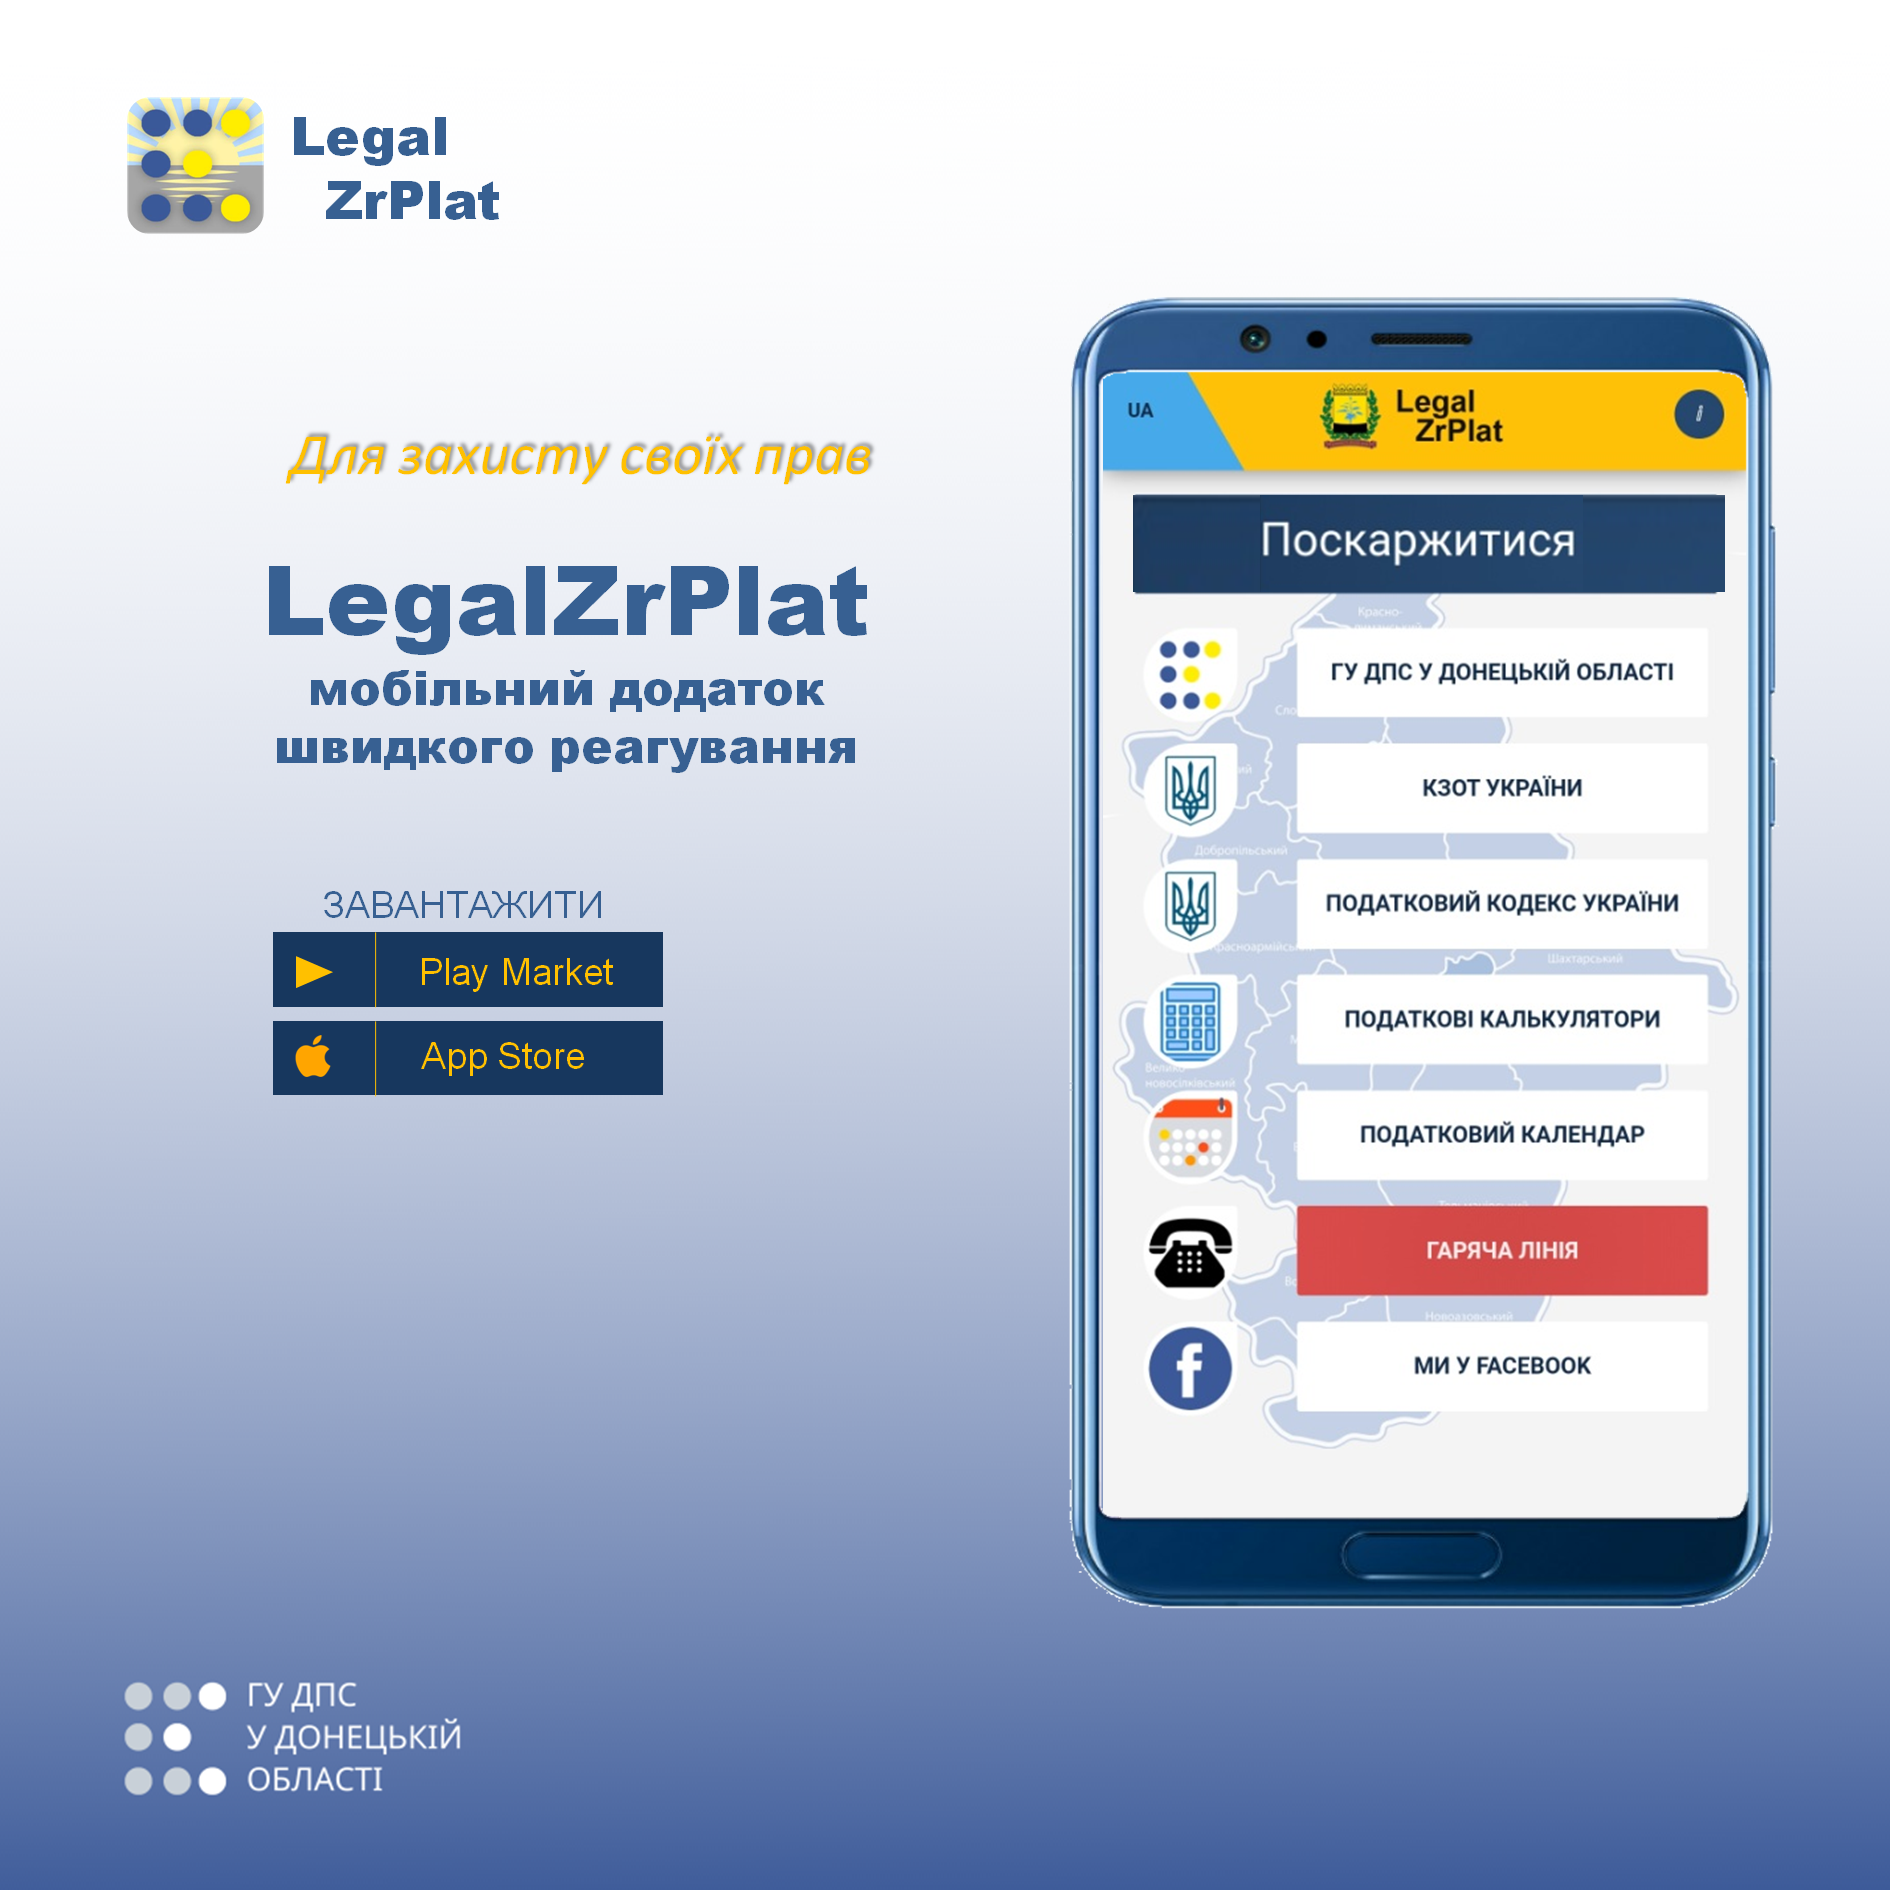 Мобільний додаток #Legal_ZrPlat доповнено новими функціями